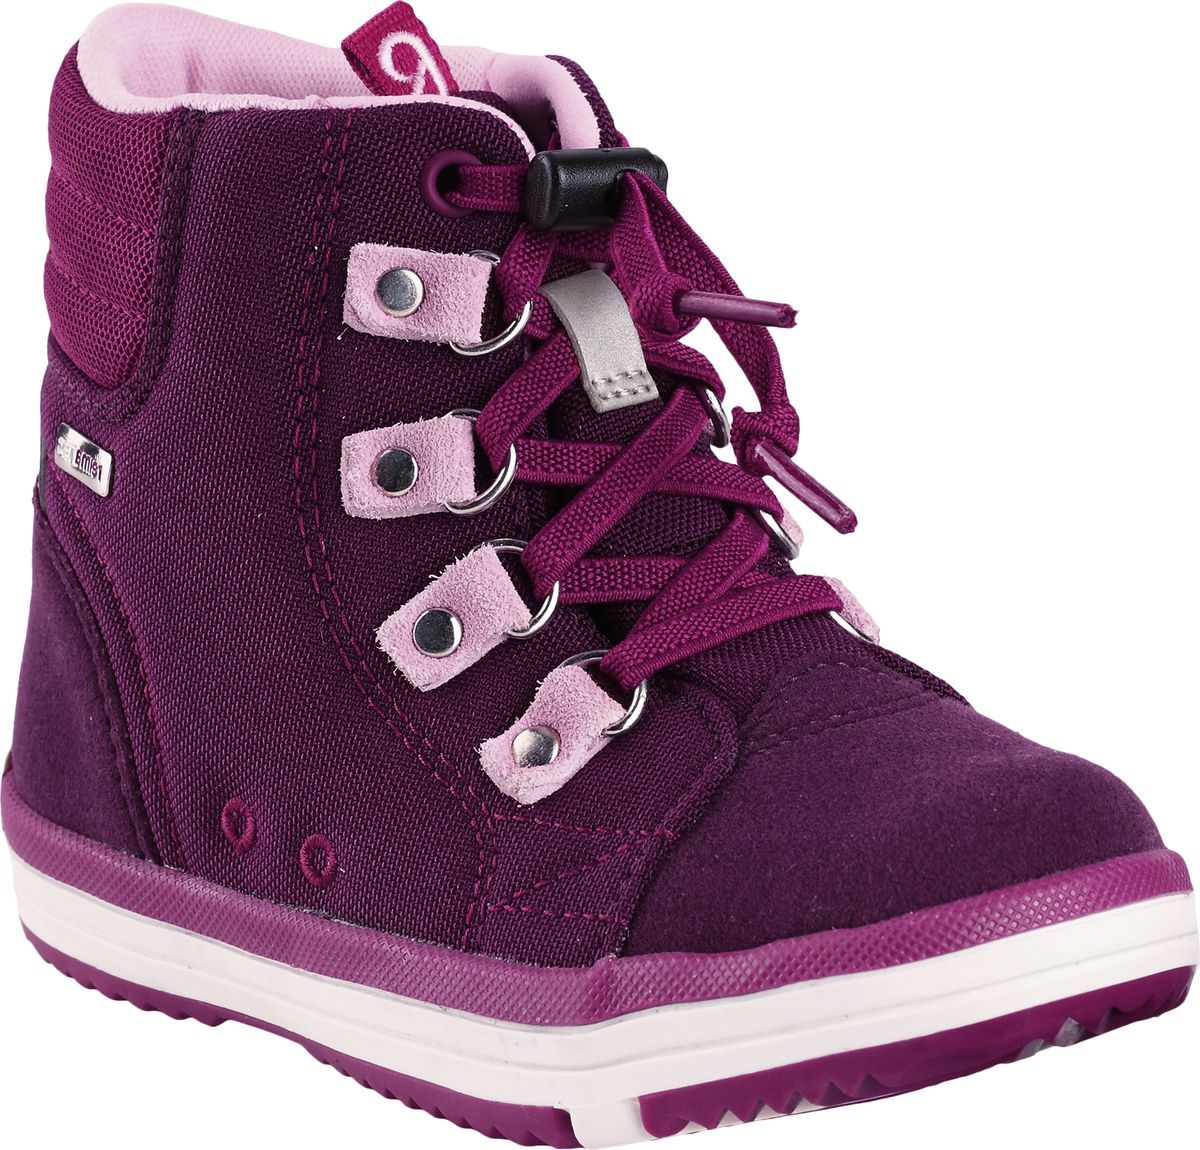 Ботинки детские Reima Wetter, цвет: фиолетовый. 5693434960. Размер 36